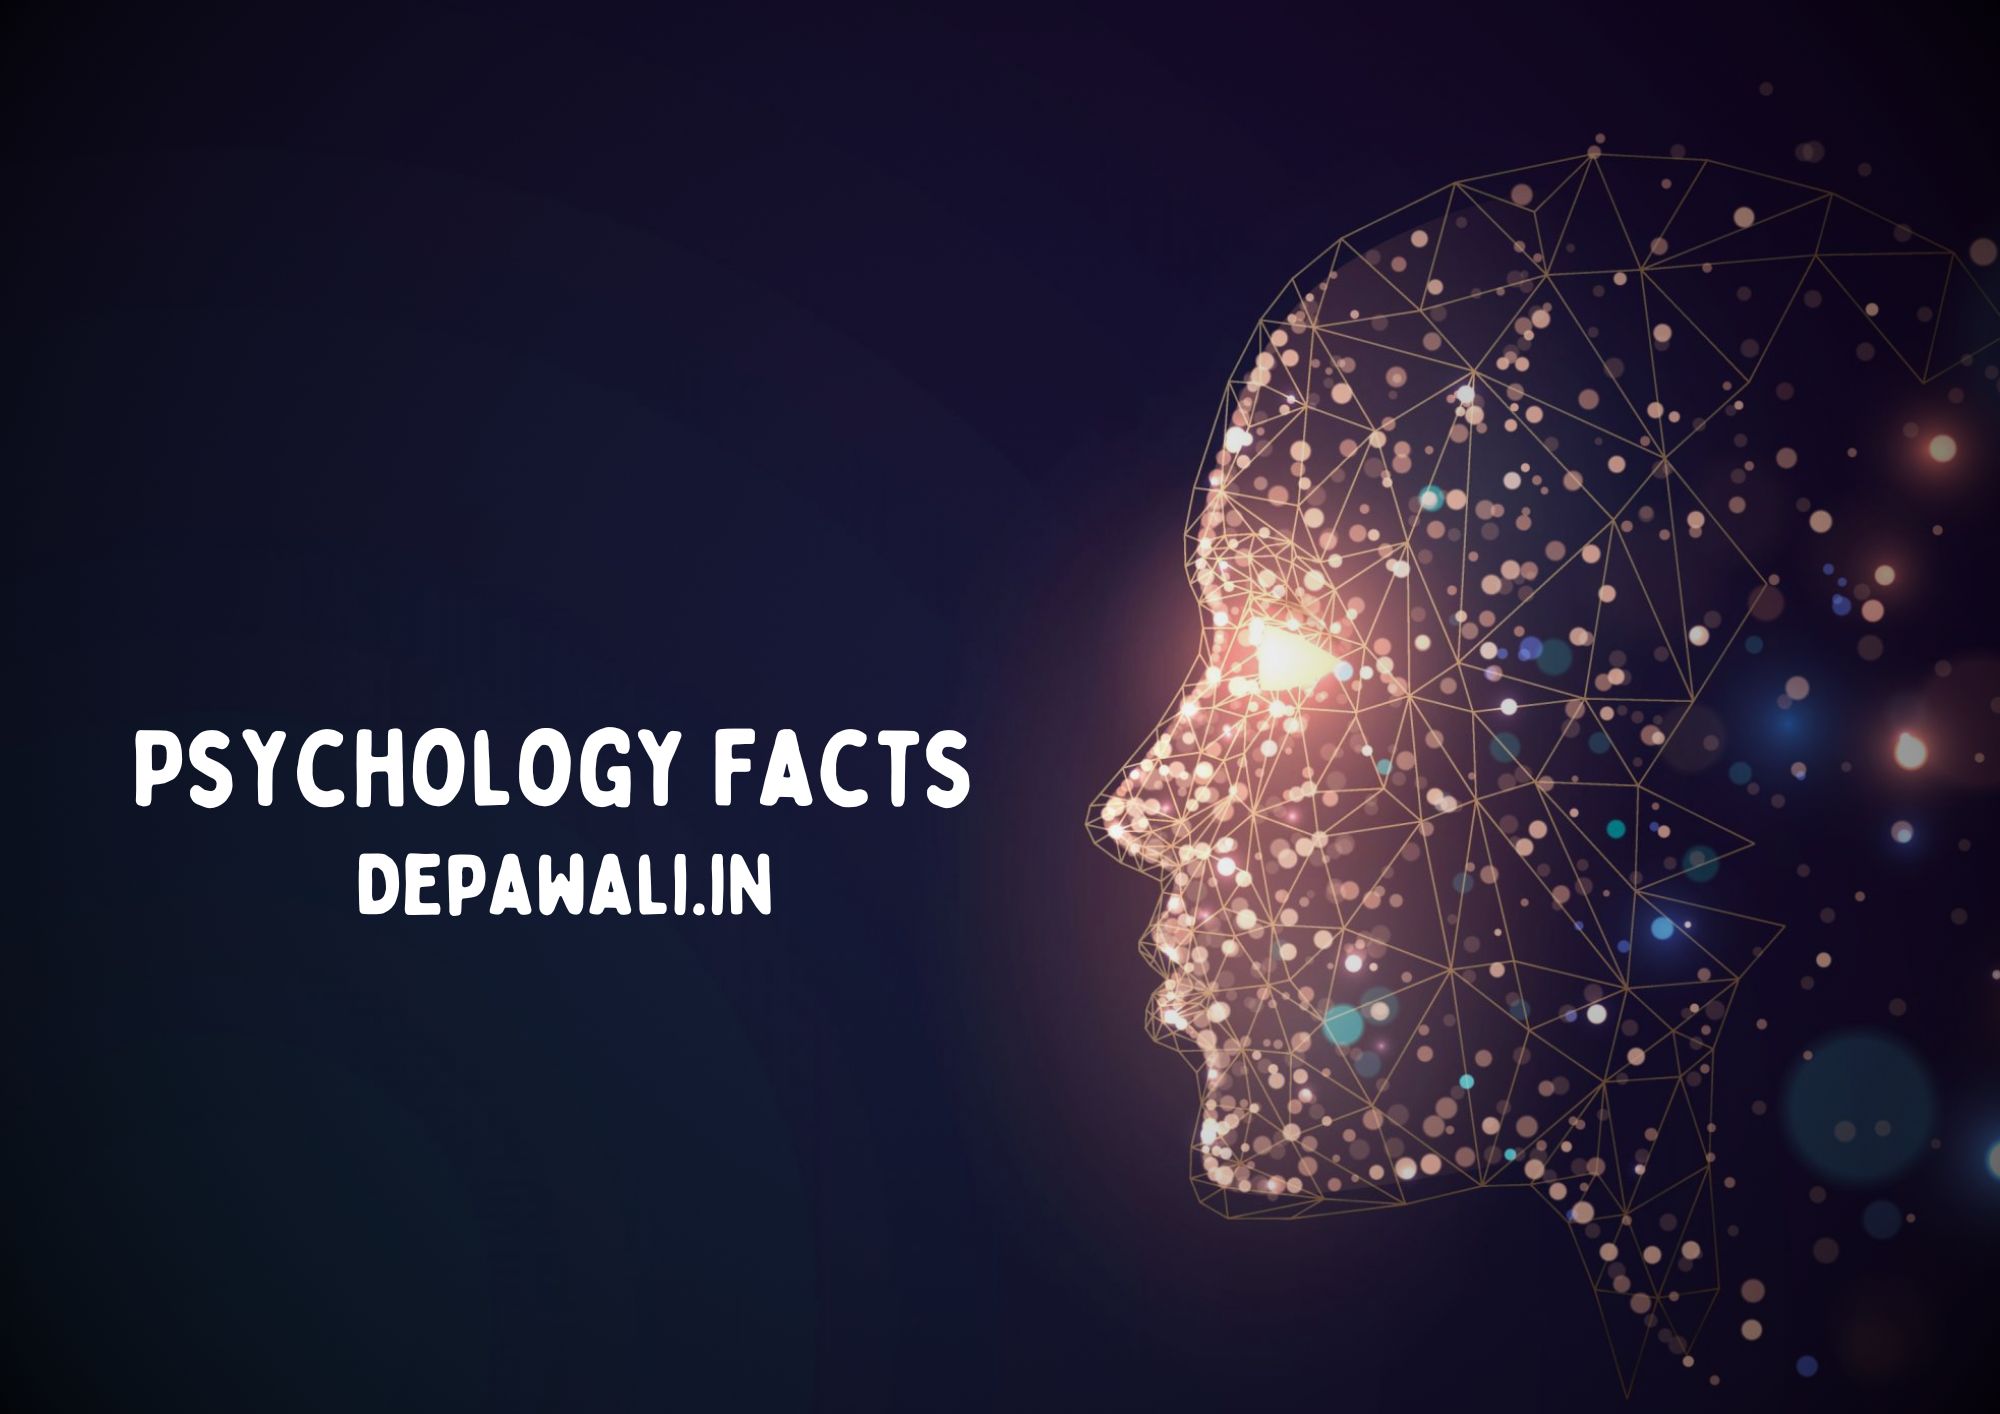 साइकोलॉजी फैक्ट्स इन हिंदी | मनोवैज्ञानिक रोचक तथ्य - Psychology Facts About Human Behavior In Hindi - True Psychology Facts In Hindi